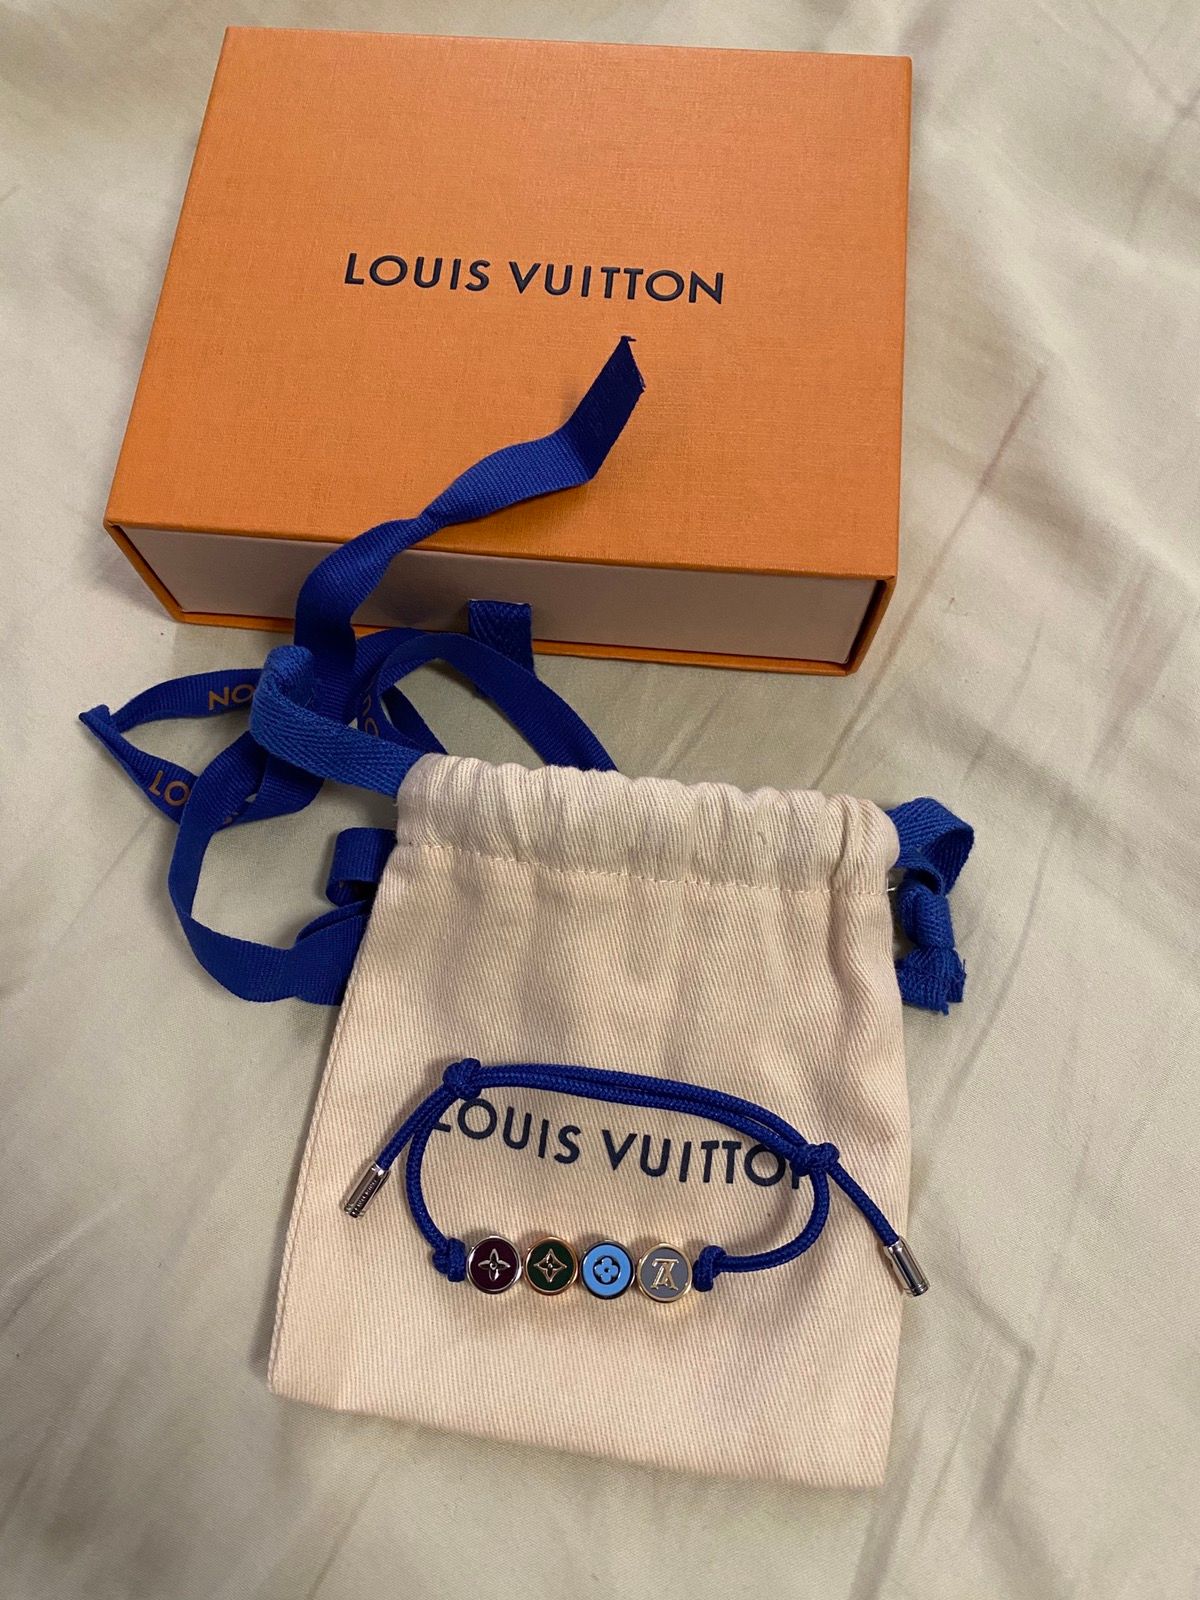 Louis Vuitton Beads Bracelet, Blue, One Size